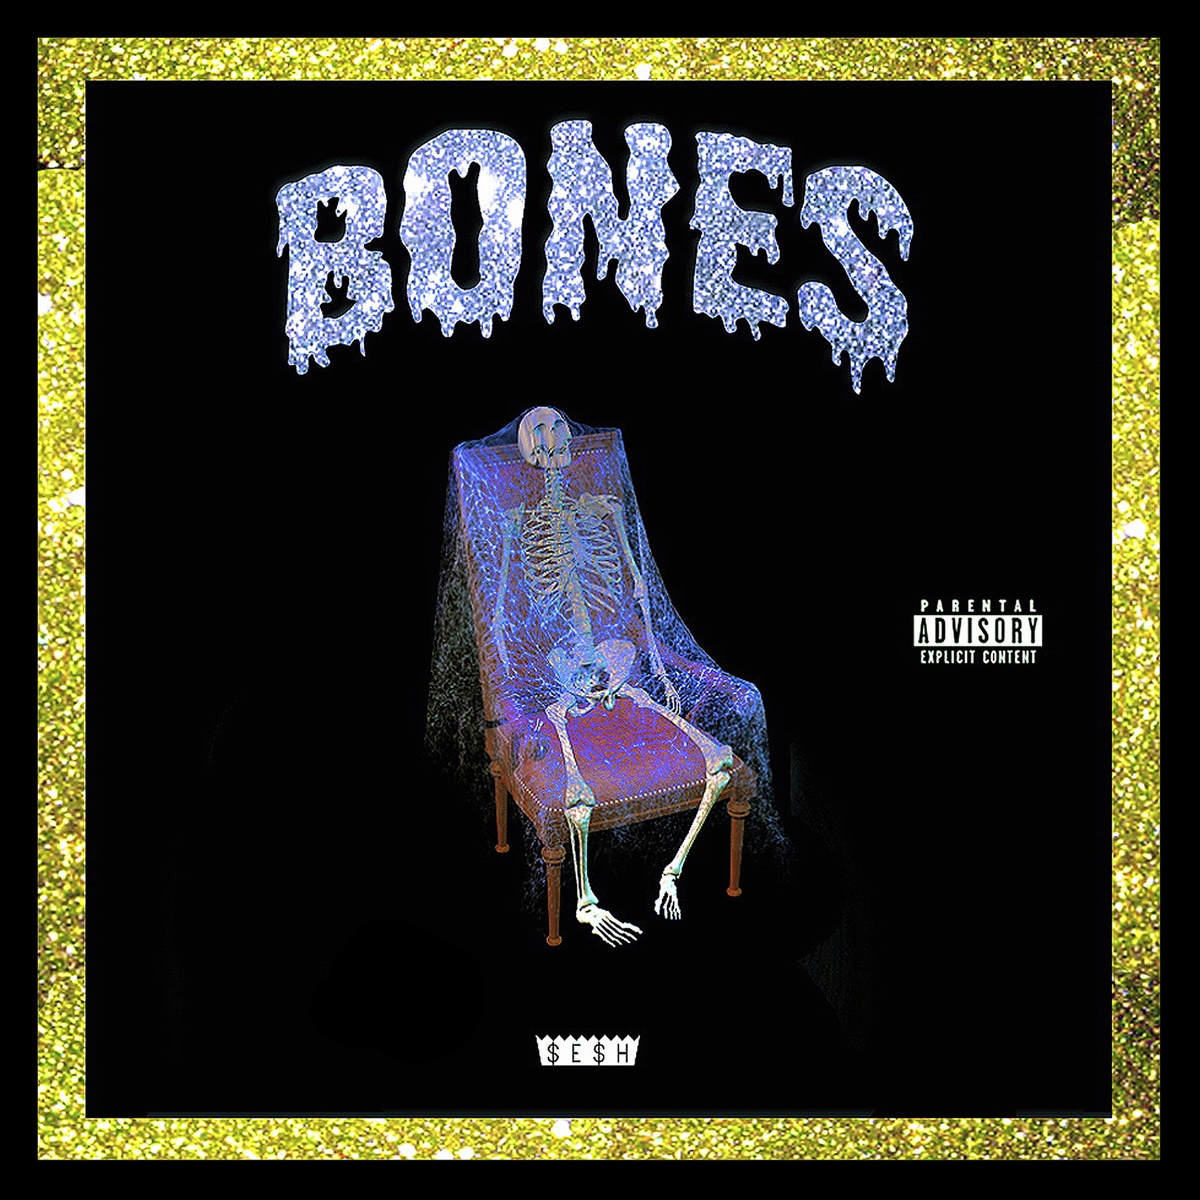 Bones download. Bones обложки альбомов. Bones (рэпер). Bones unrendered обложка. Bones обложки треков.